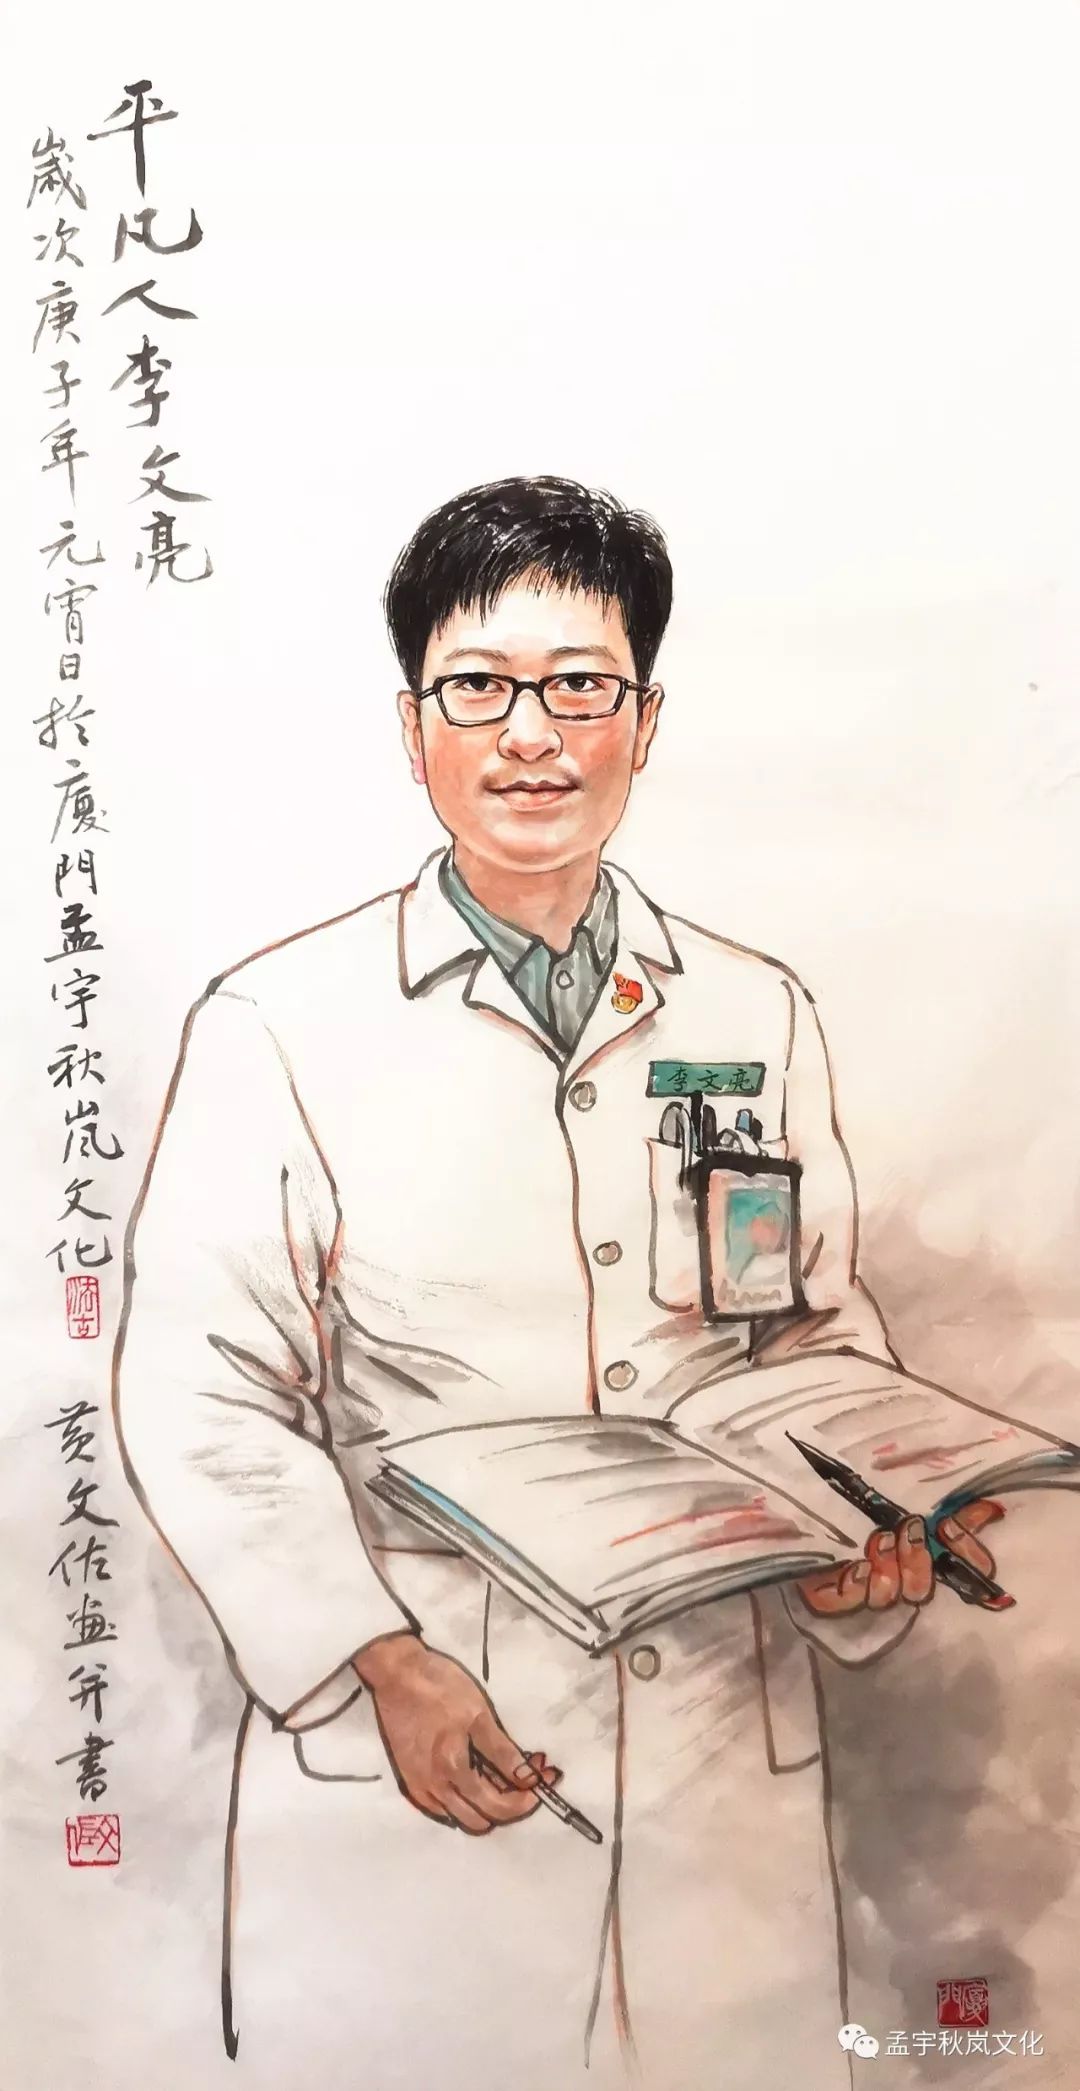 水墨肖像画《平凡人李文亮》(50x100cm),作者:黄文佐(2020年作)从李文